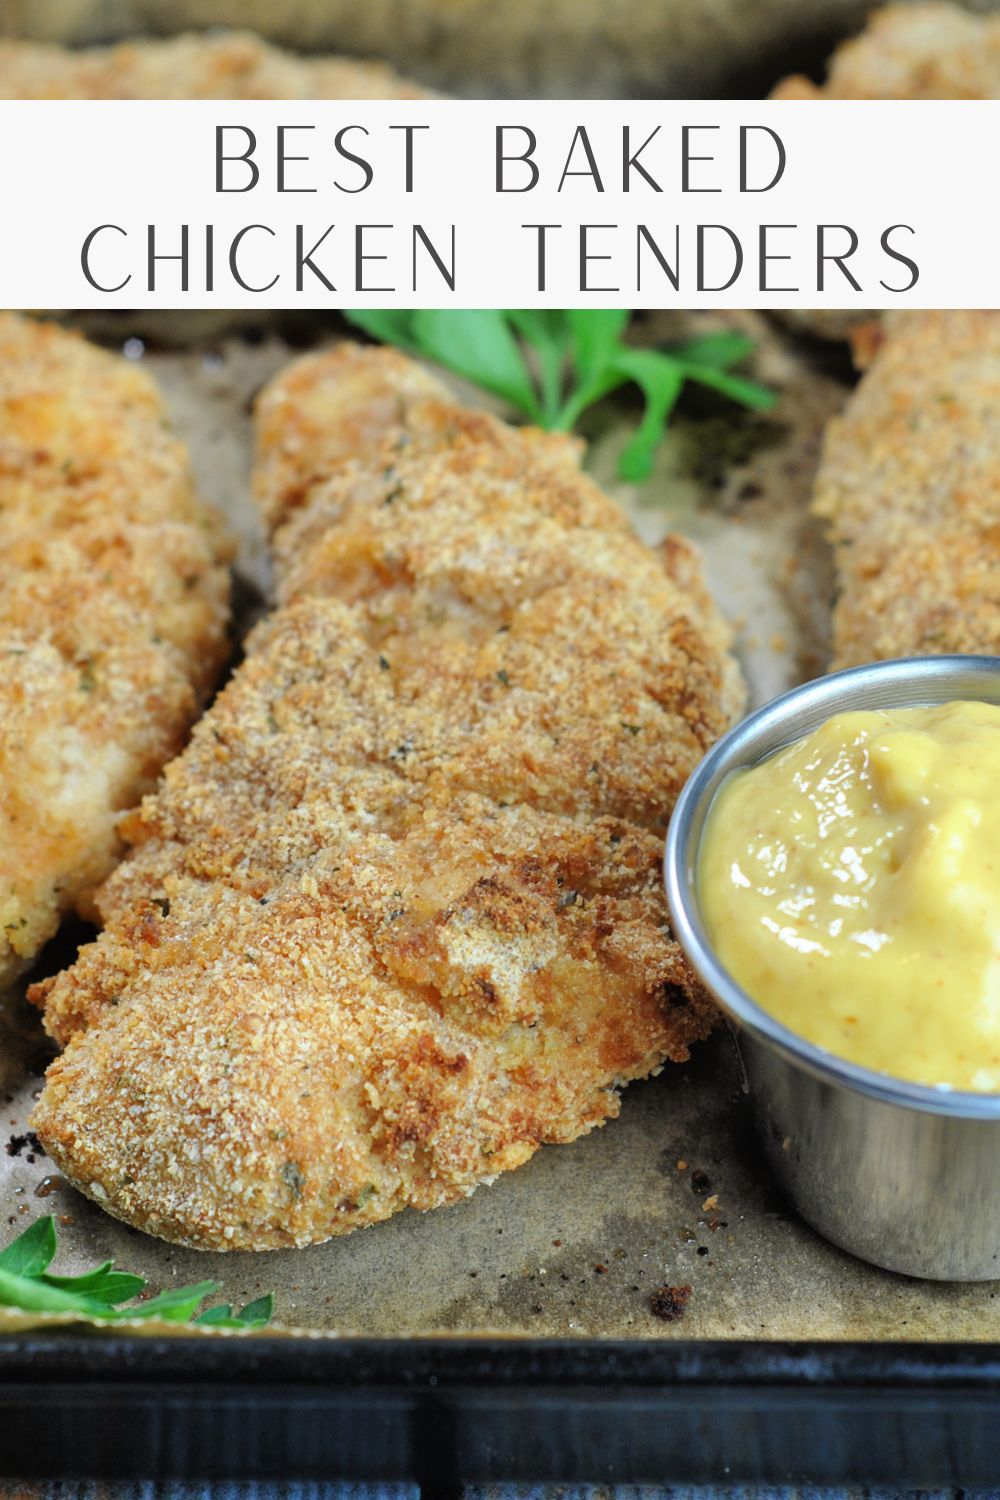 Best Baked Chicken Tenders via @preventionrd